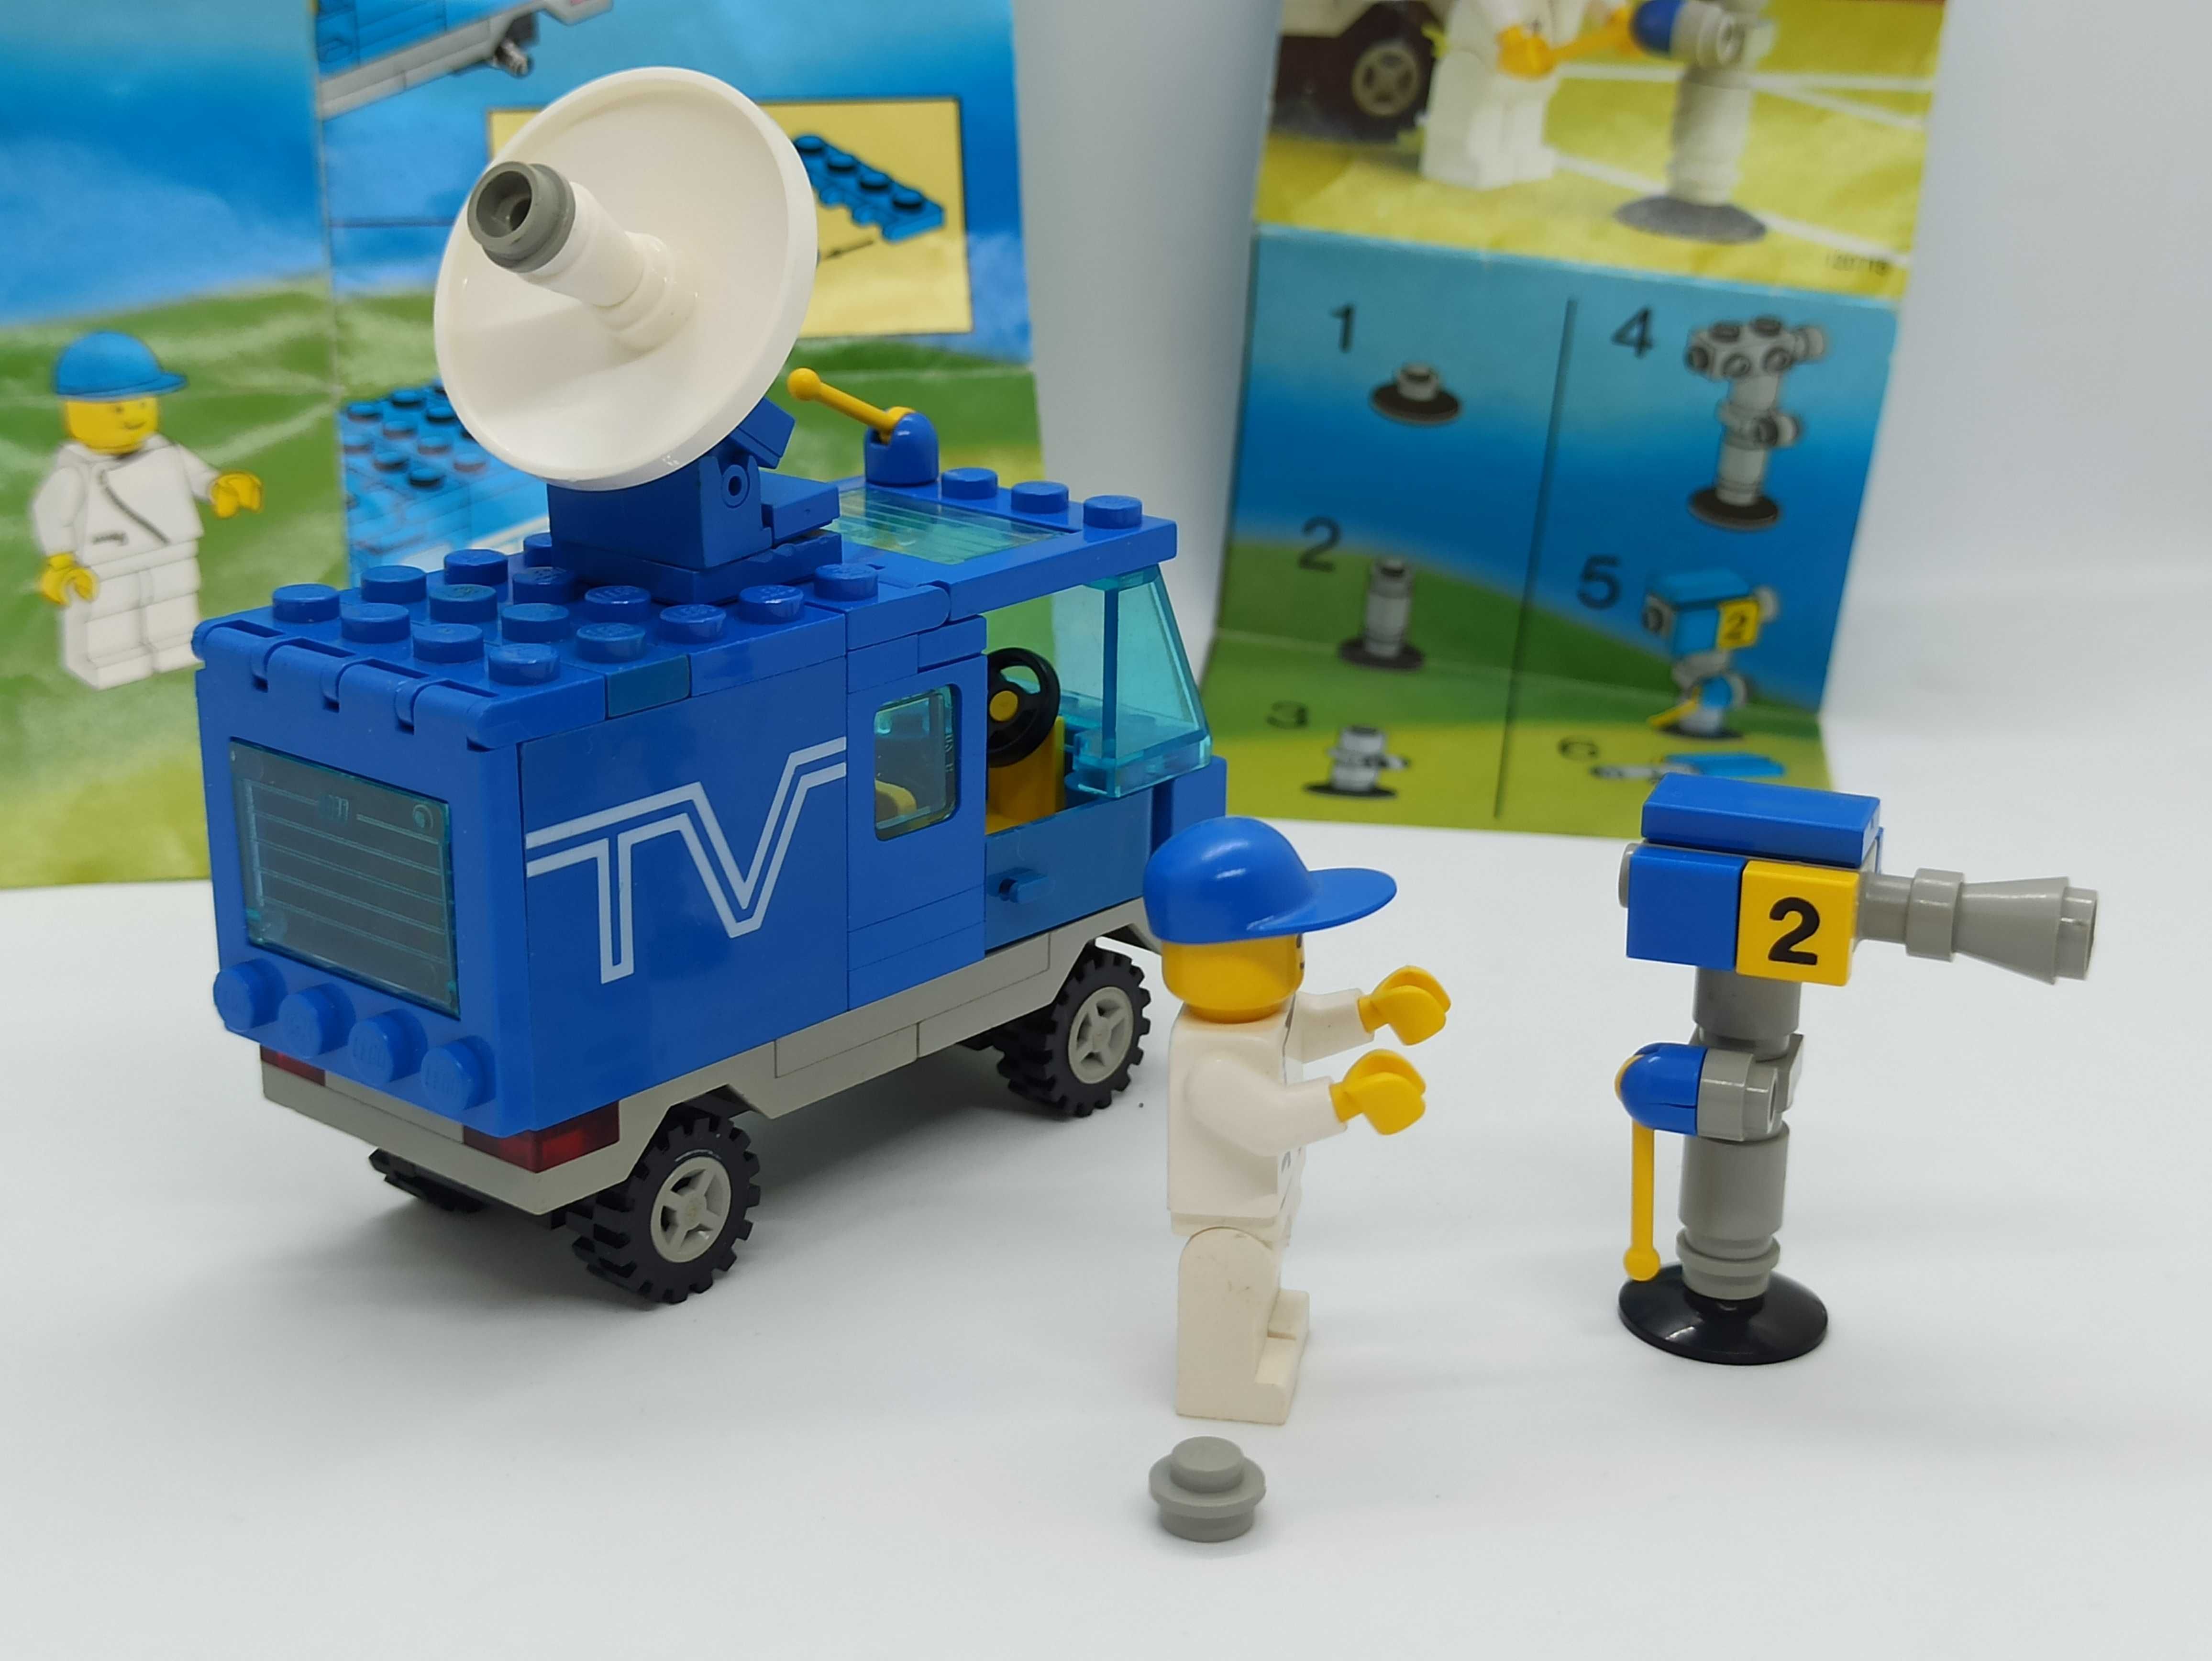 Lego 6661 TV Van / Mobile TV Studio